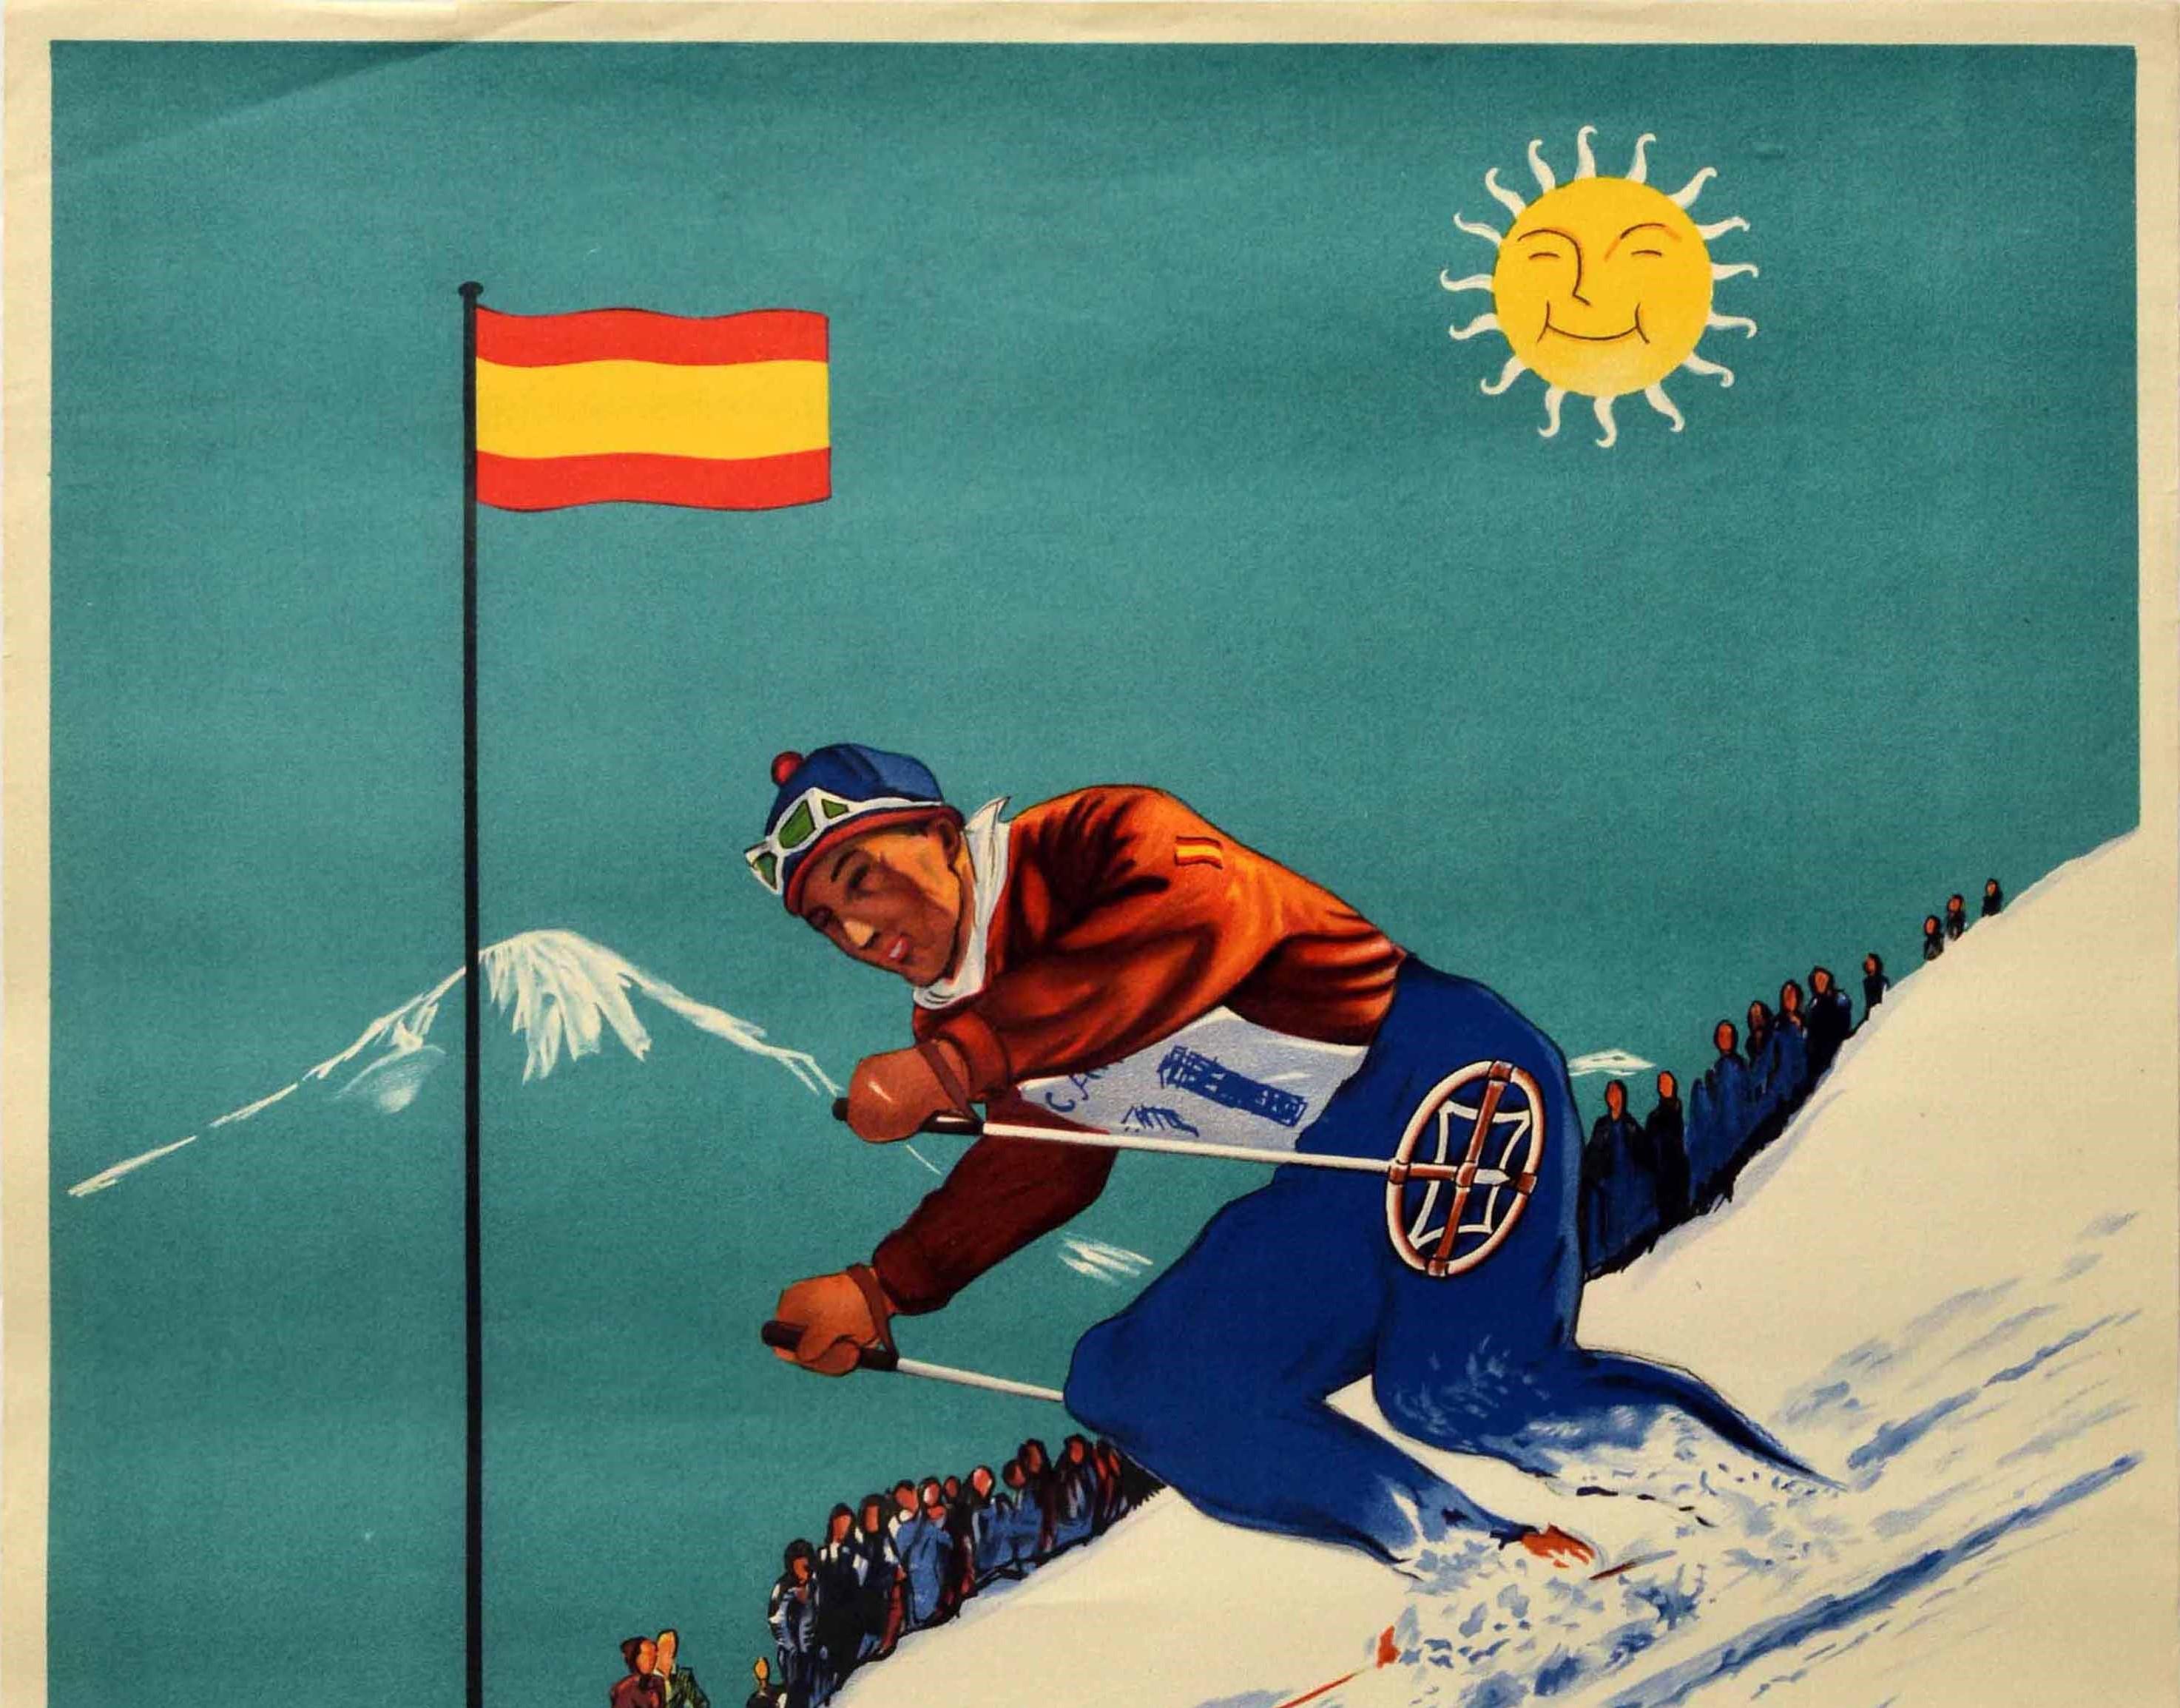 Affiche vintage originale d'une station de ski alpin représentant un skieur en rouge et bleu descendant à toute vitesse une piste enneigée devant un drapeau rouge et jaune de l'Espagne flottant au-dessus des spectateurs avec une montagne enneigée